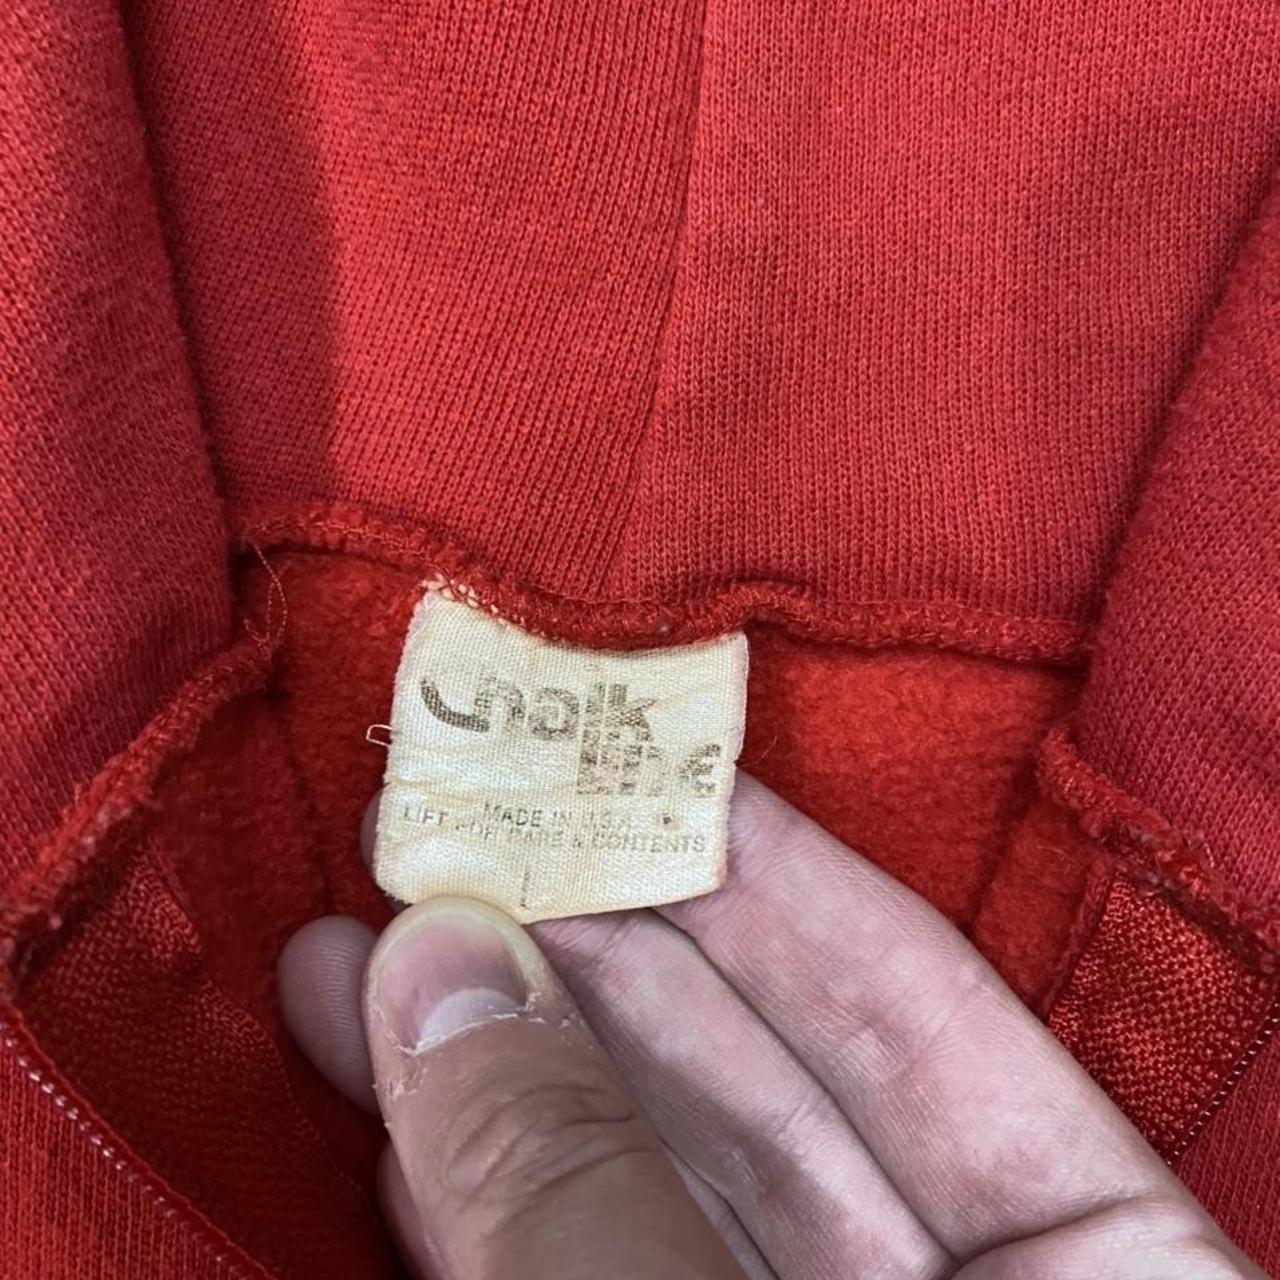 Vintage University of Louisville zip up hoodie - Depop